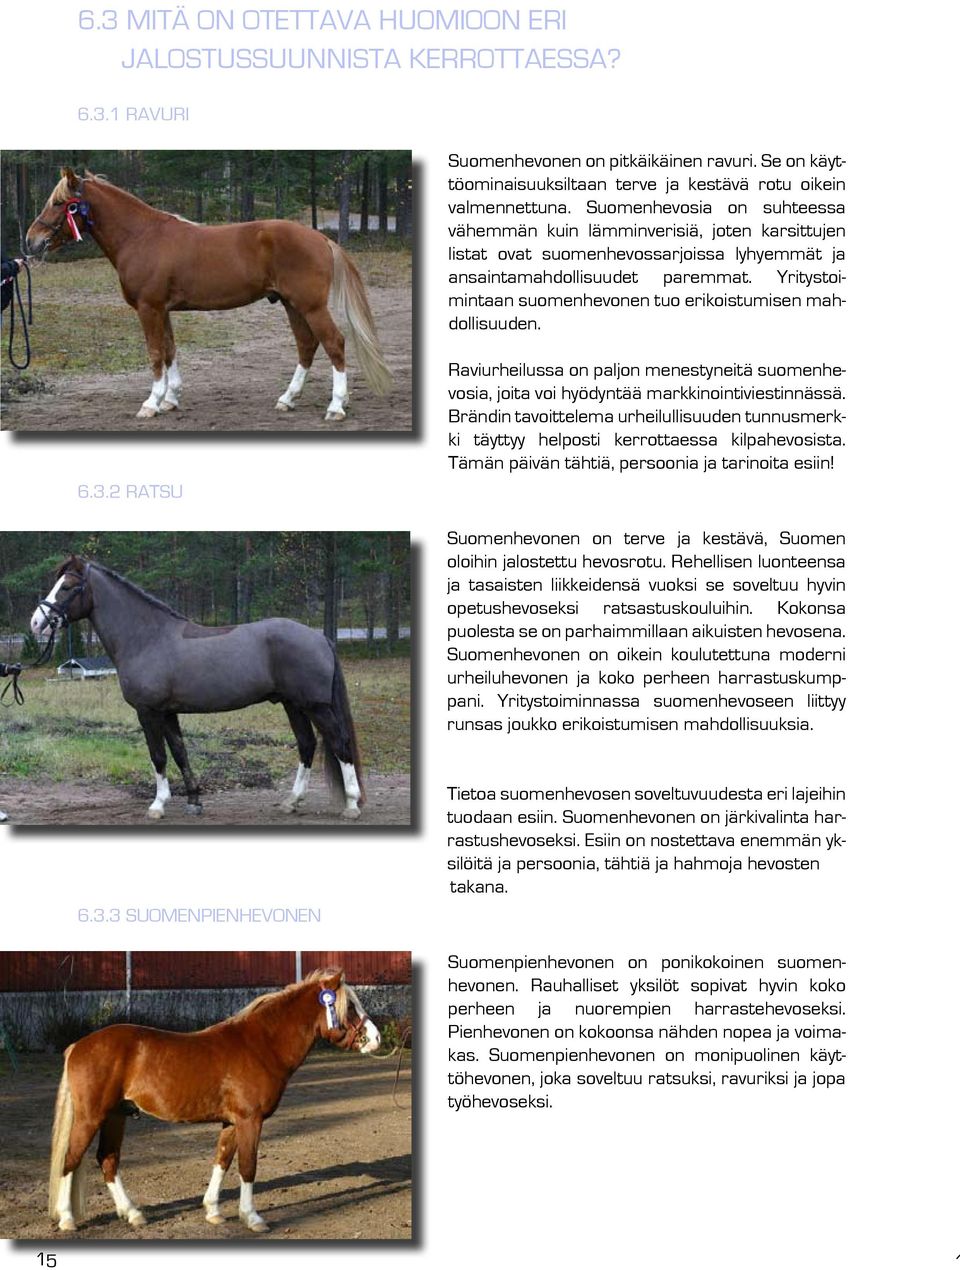 Yritystoimintaan suomenhevonen tuo erikoistumisen mahdollisuuden. 6.3.2 Ratsu Raviurheilussa on paljon menestyneitä suomenhevosia, joita voi hyödyntää markkinointiviestinnässä.